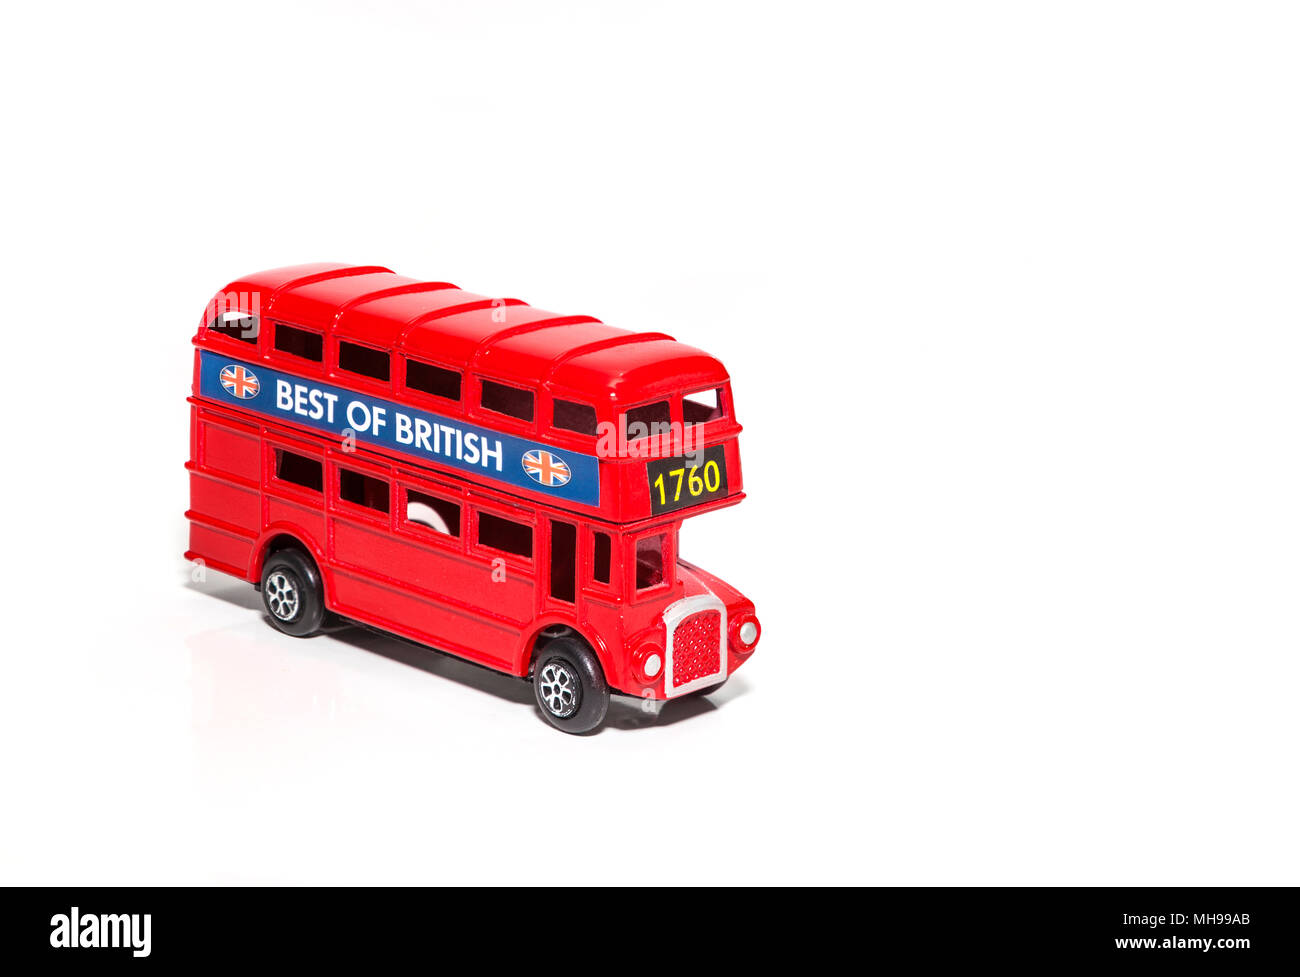 Un bus rouge de Londres Doubledecker Isolé sur fond blanc Banque D'Images